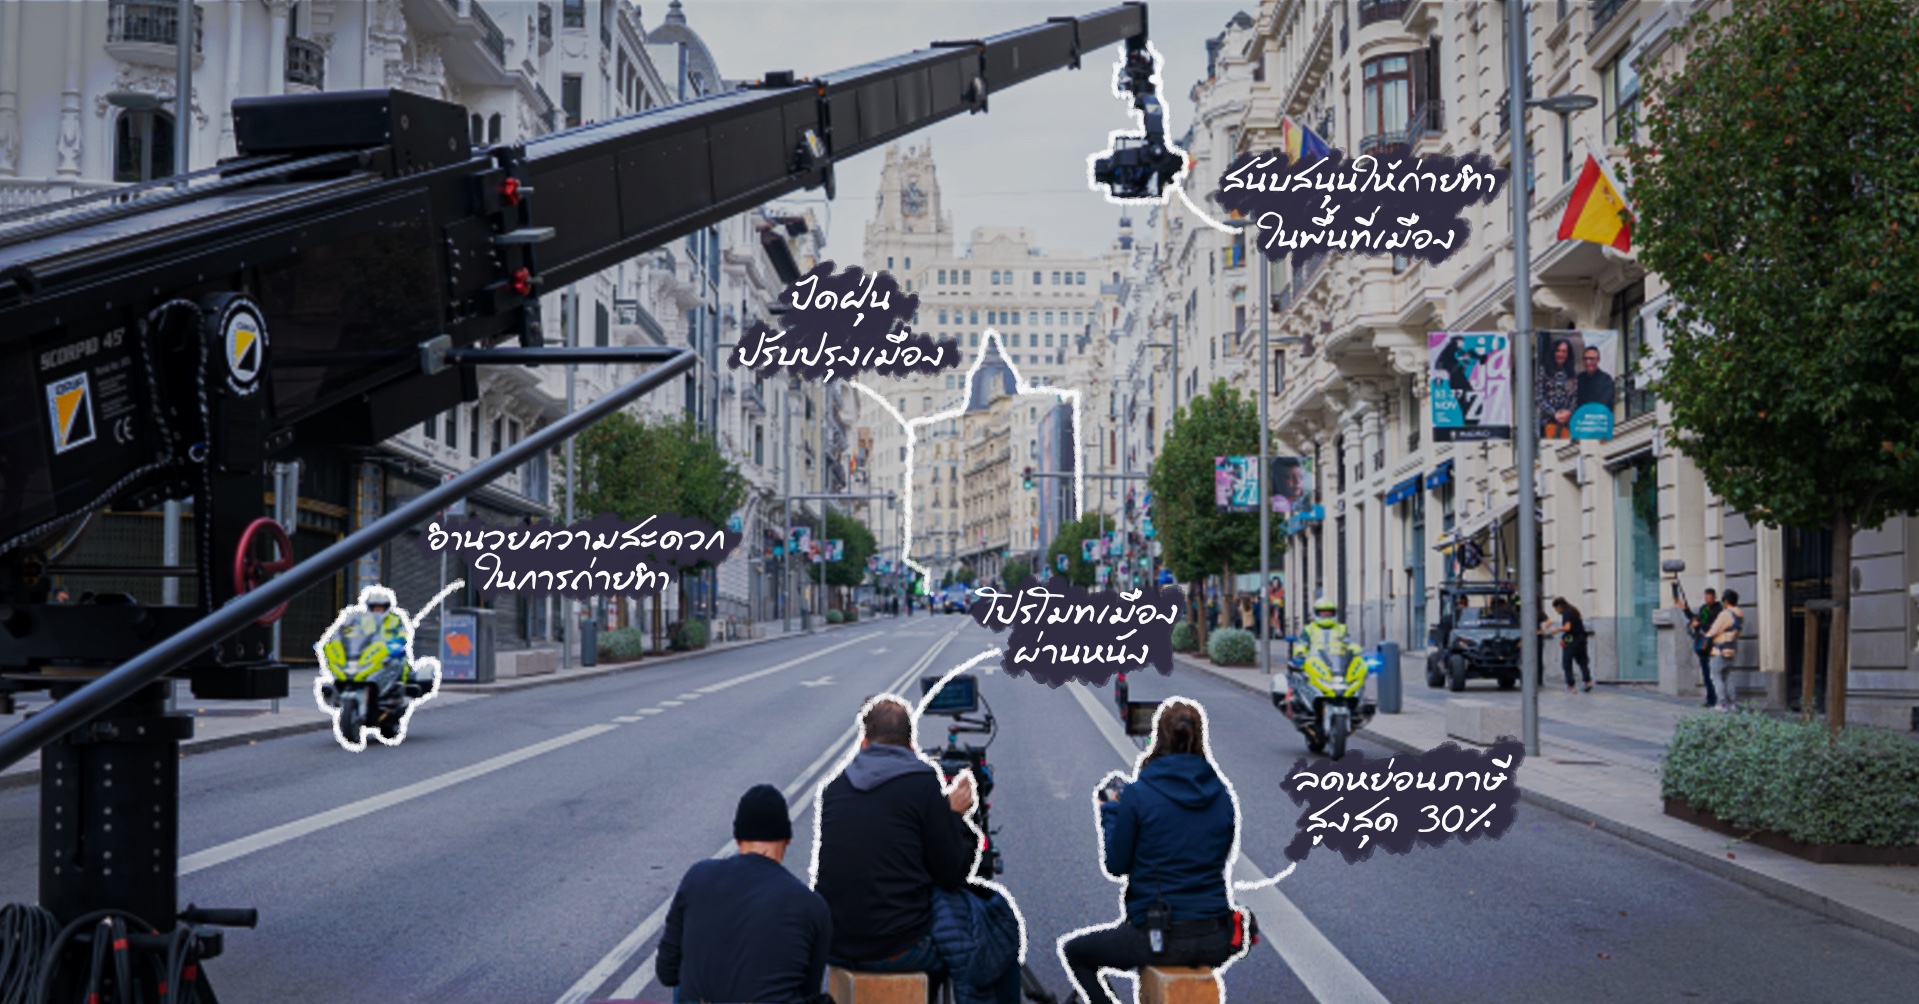 การท่องเที่ยวเชิงคอนเทนต์ เมื่อหนังทำให้เมืองดัง และเมืองใช้การถ่ายทำเป็นกลยุทธ์